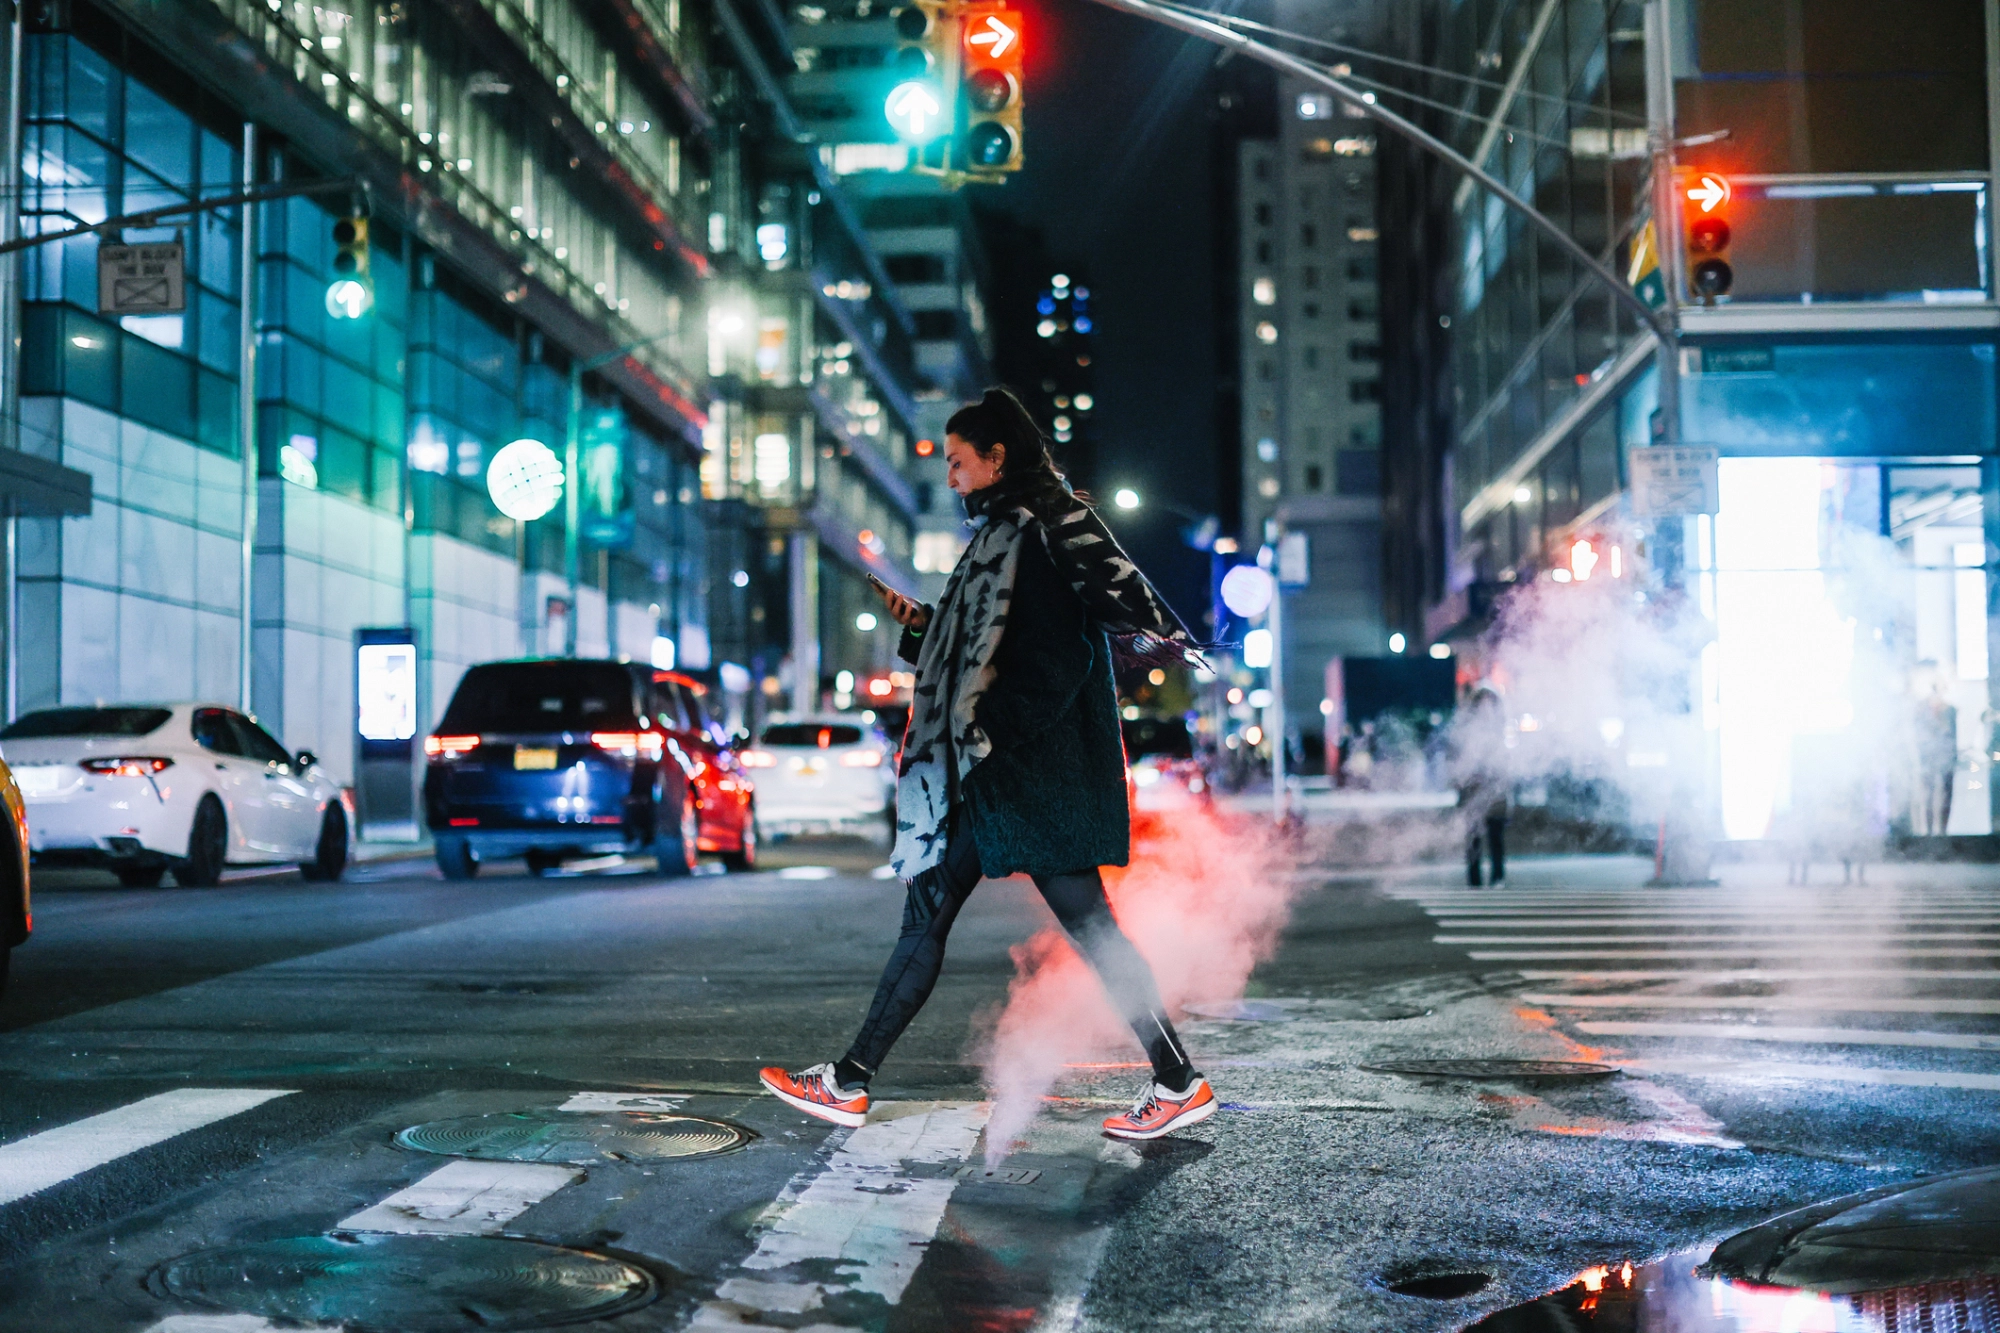 Woman walking in Manhattan on an evening